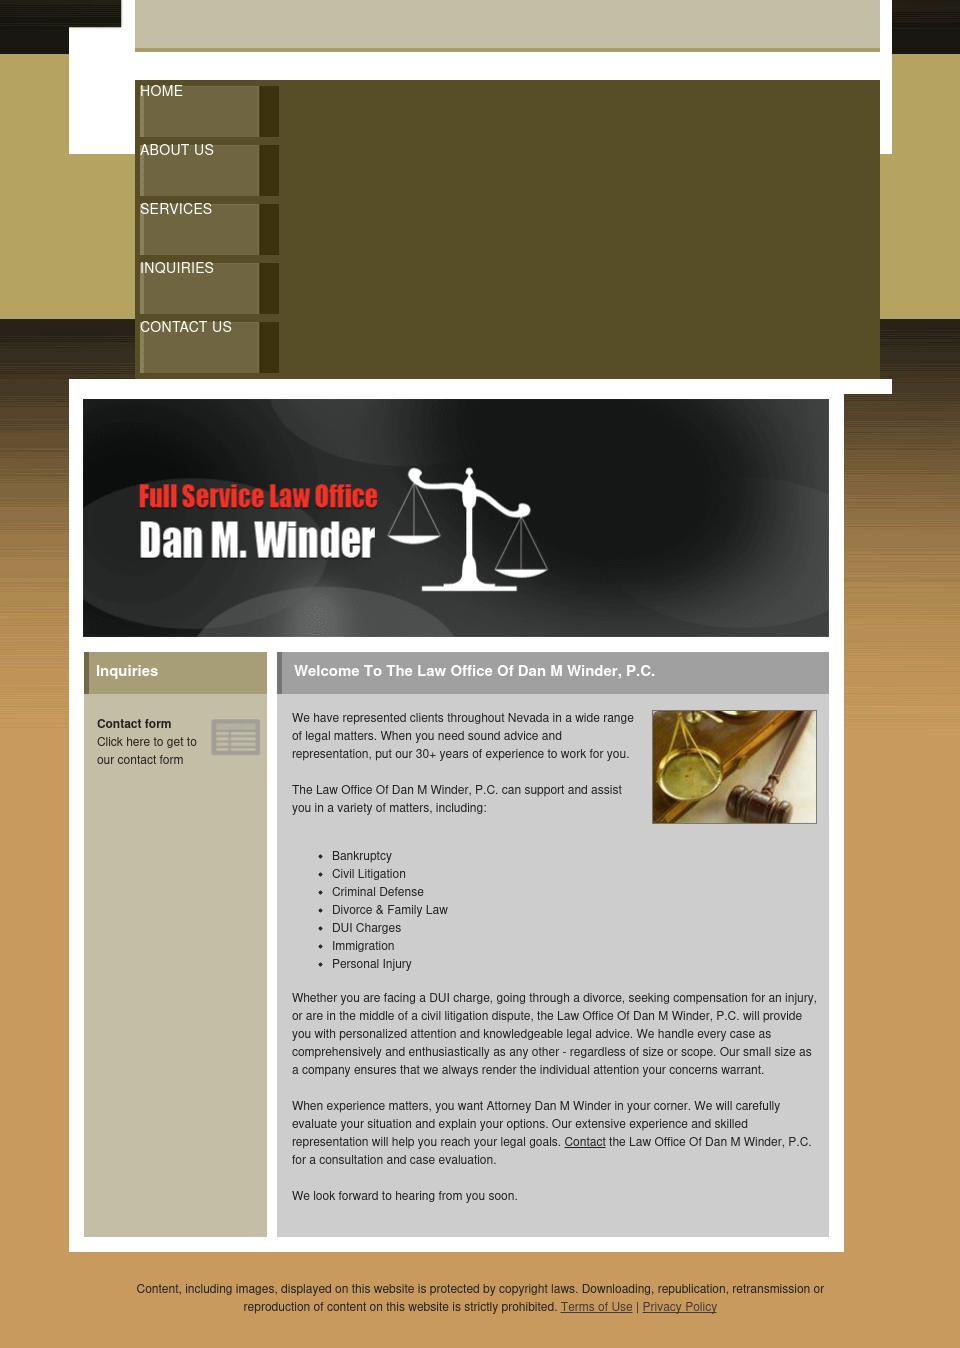 Law Office Of Dan M Winder PC - Las Vegas NV Lawyers